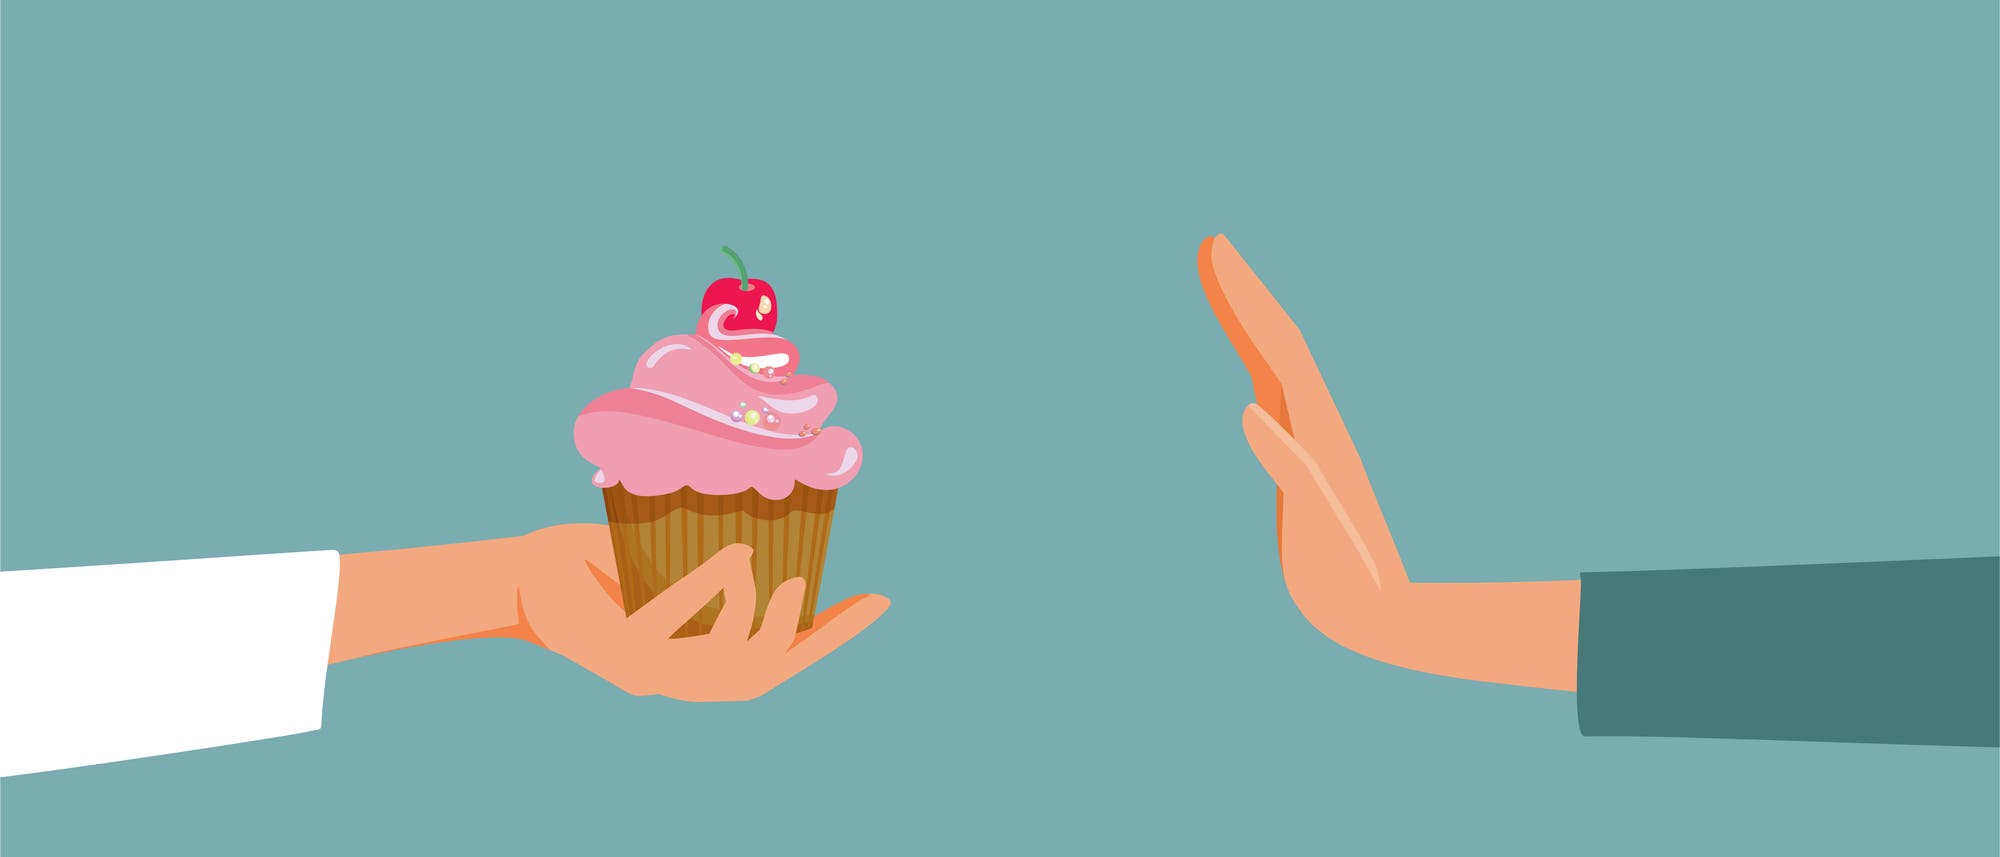 Illustration mit zwei Händen vor türkisfarbenem Hintergrund. Eine Hand hält der anderen einen Cupcake entgegen, die andere Person winkt ab.